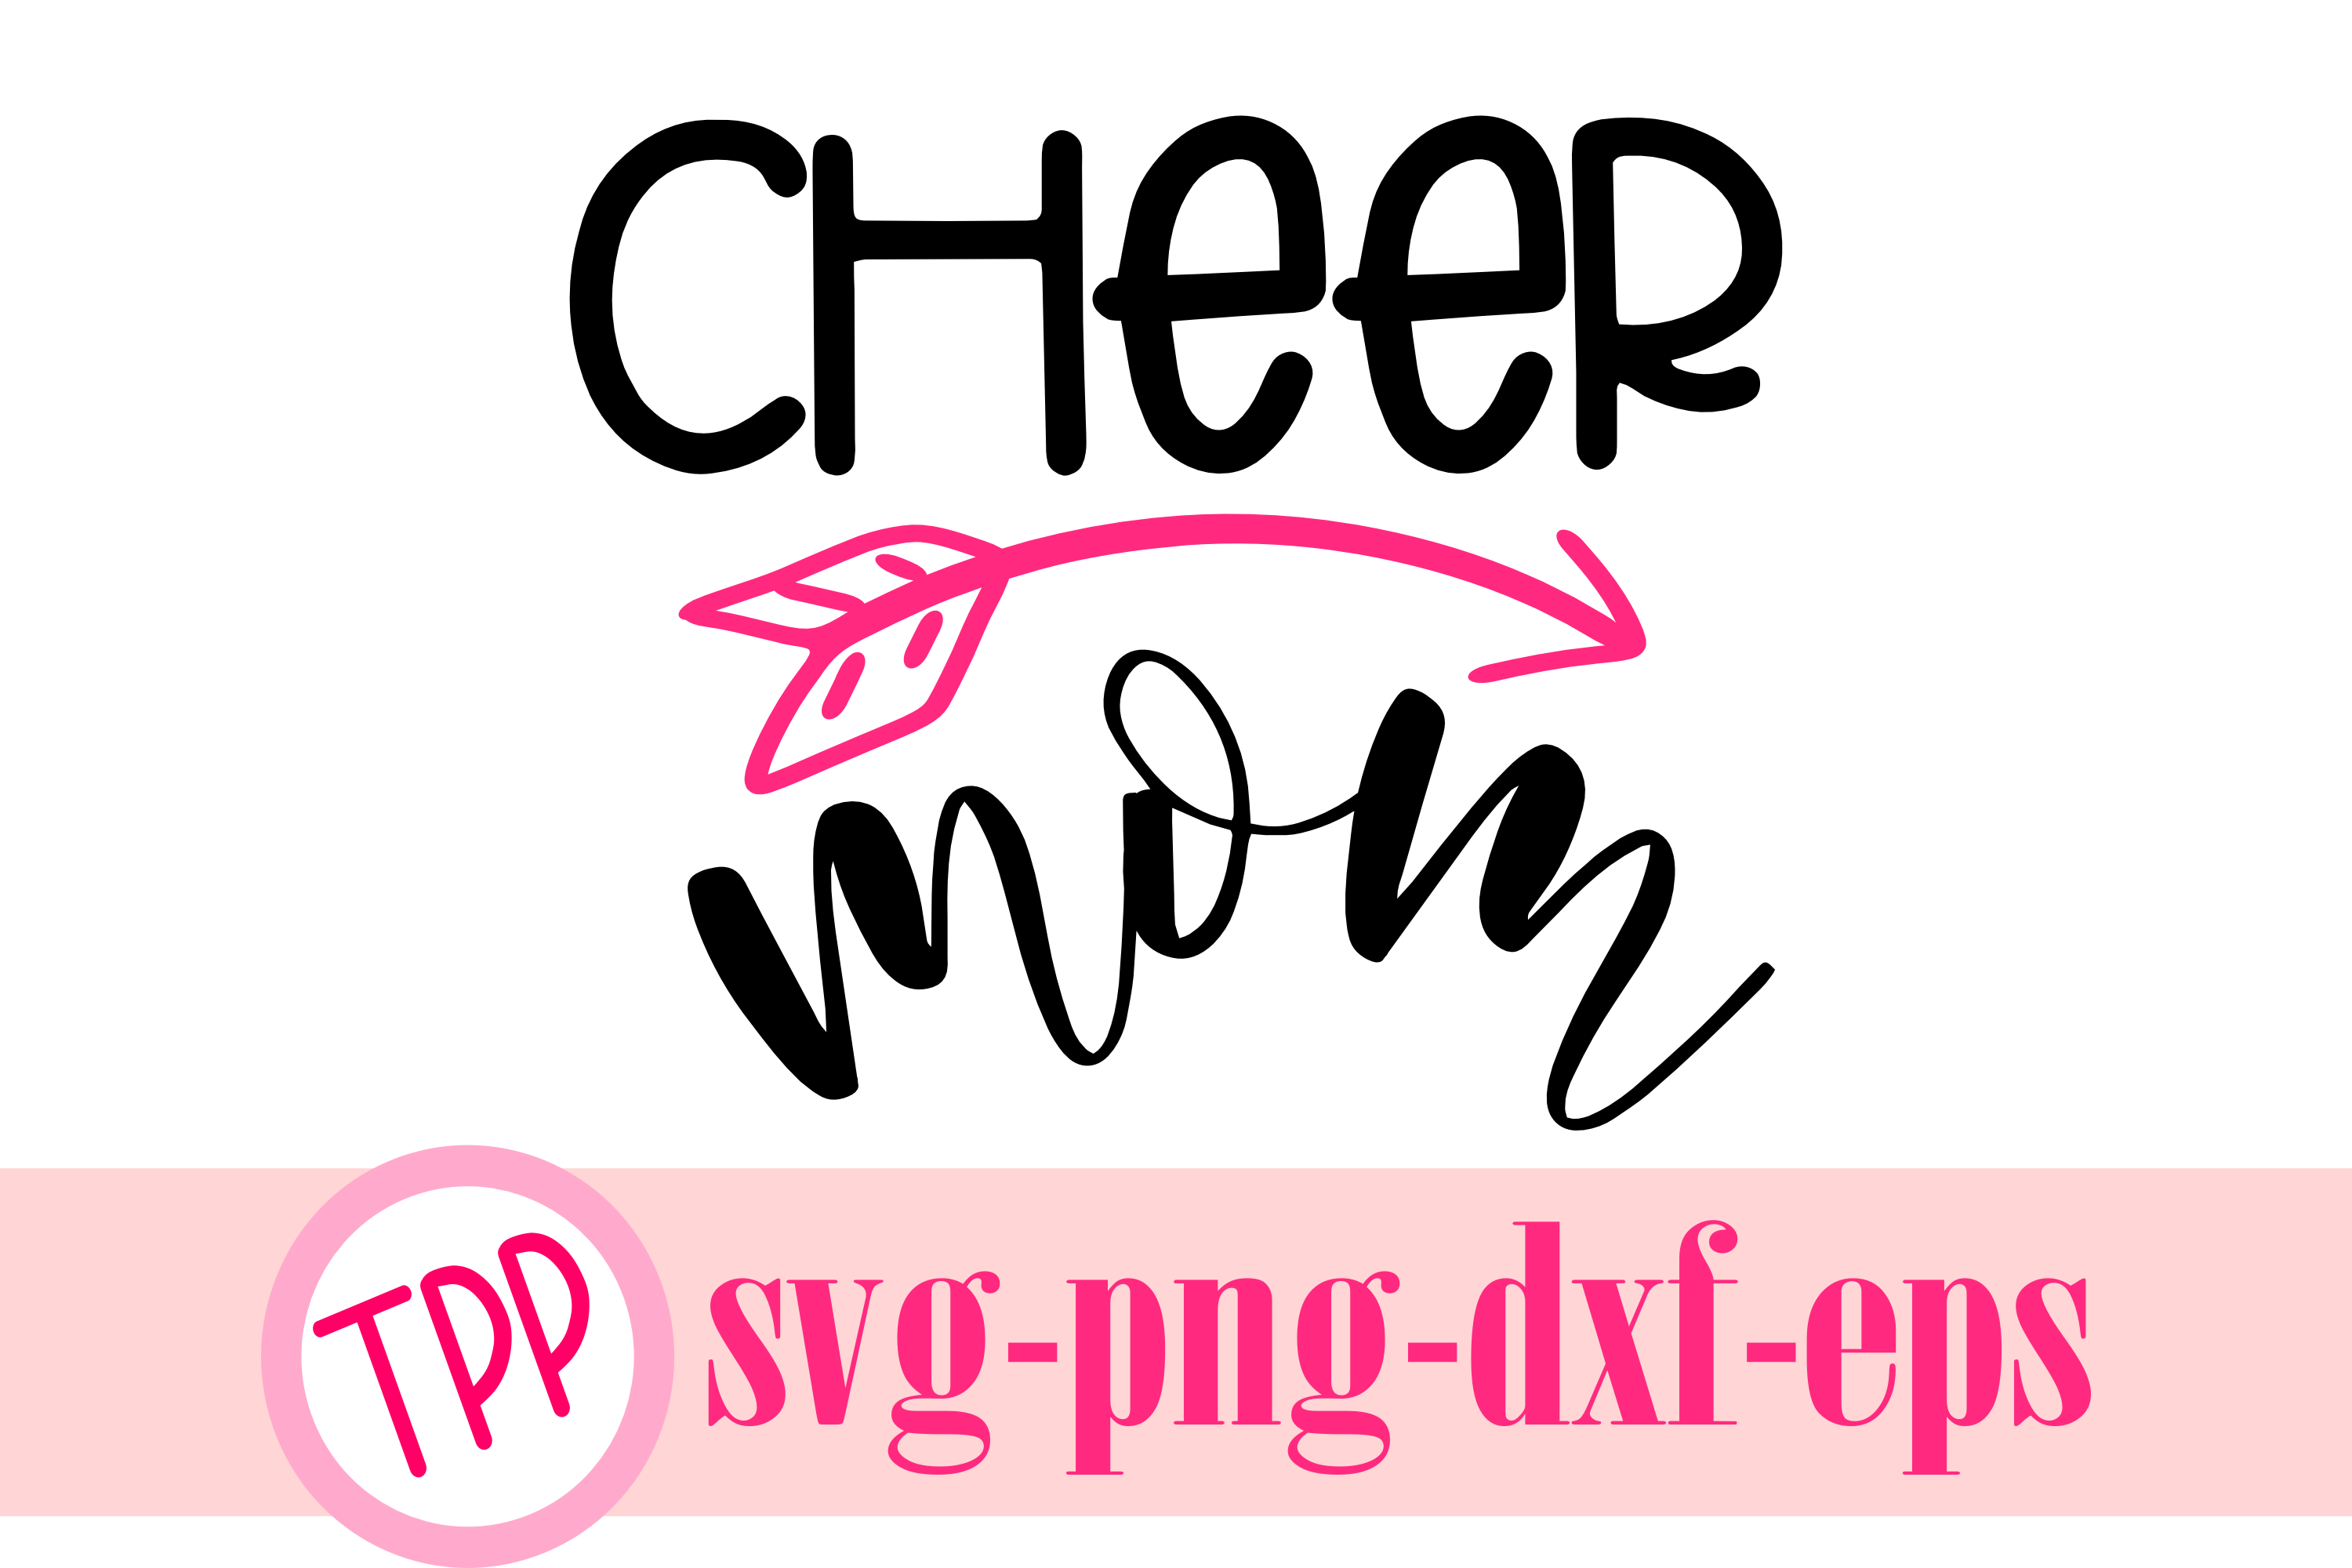 Cheer MOM svg, cheer svg, cheerleader design